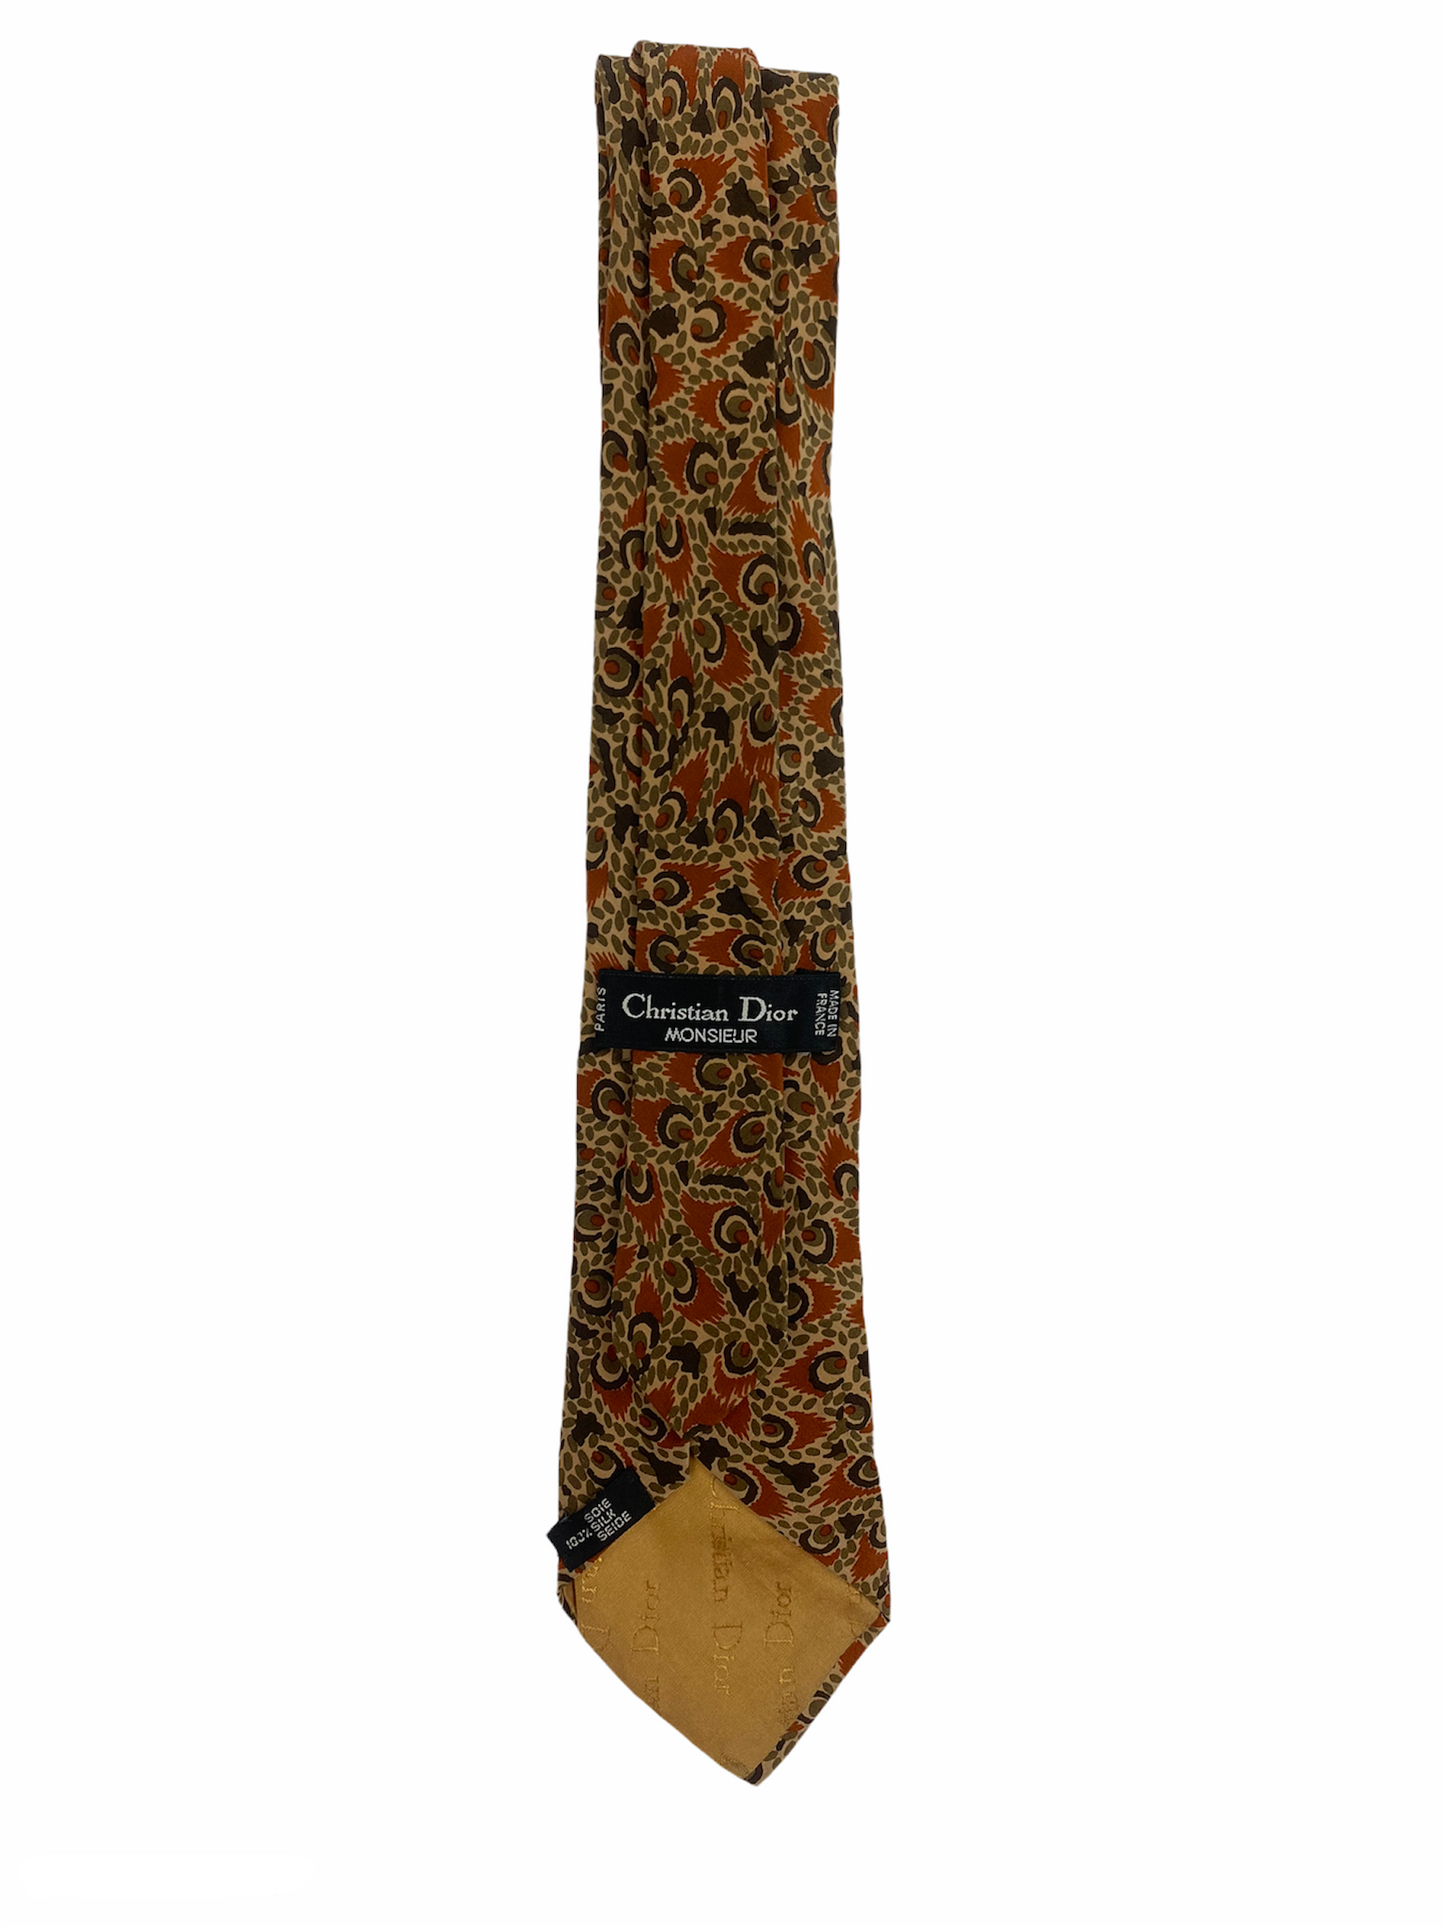 Cravate Dior en soie 100% au motif fleuri et à la couleur dominante marron.